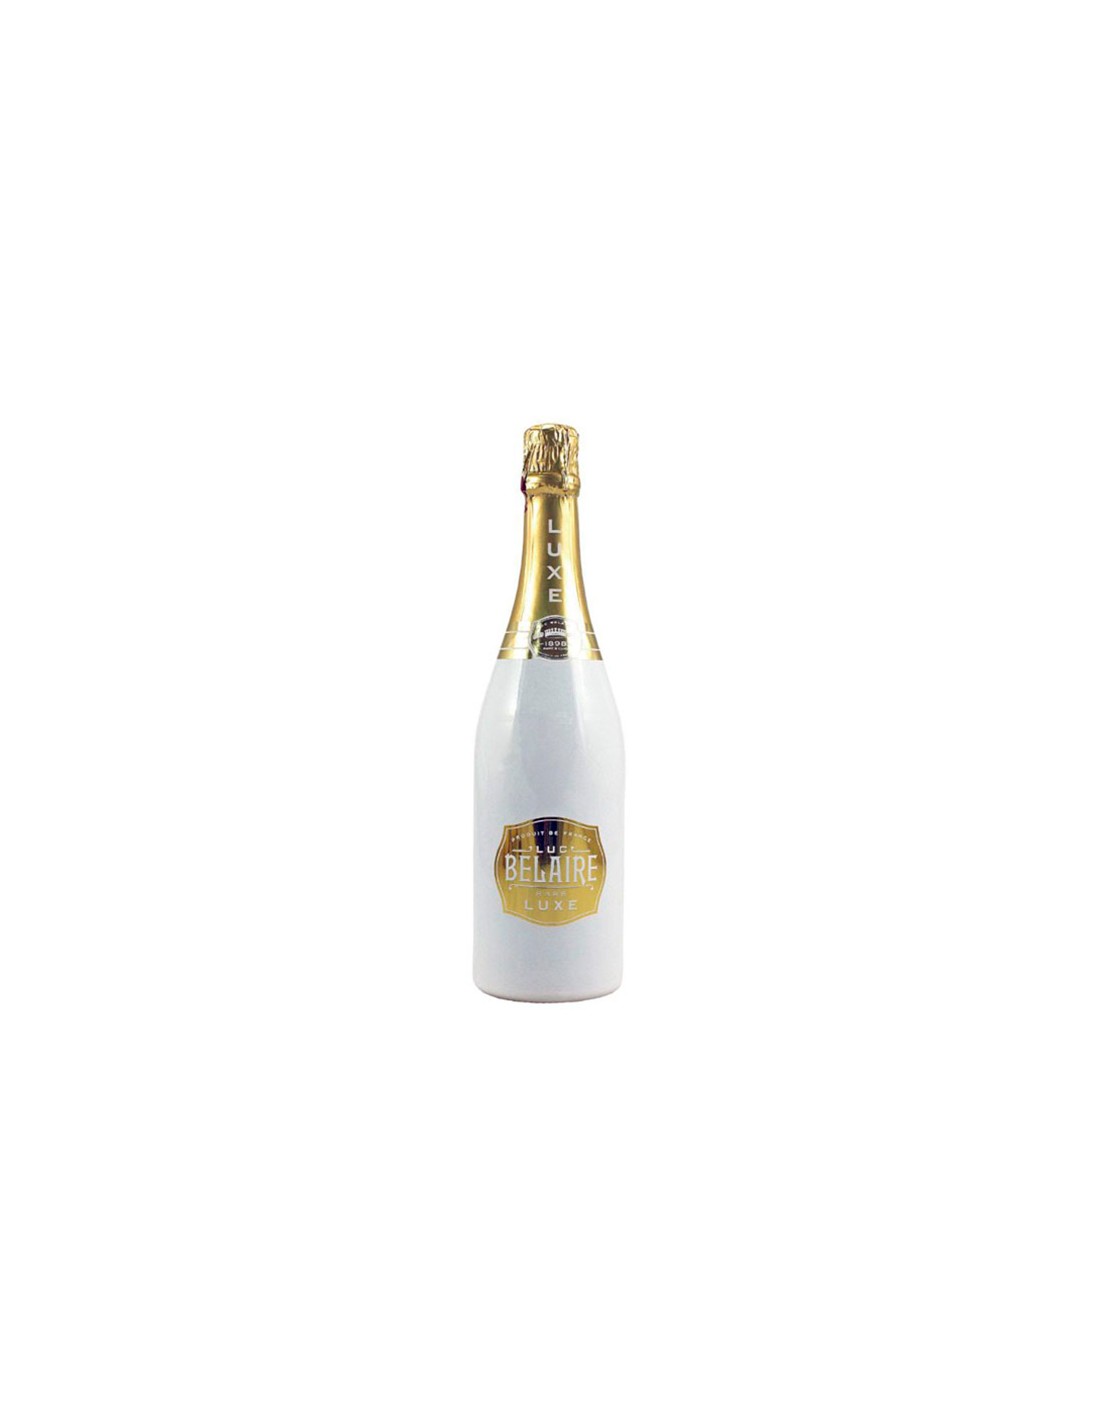 Cava - Champagne Luc Belaire Brut Gold - Au Meilleur Prix